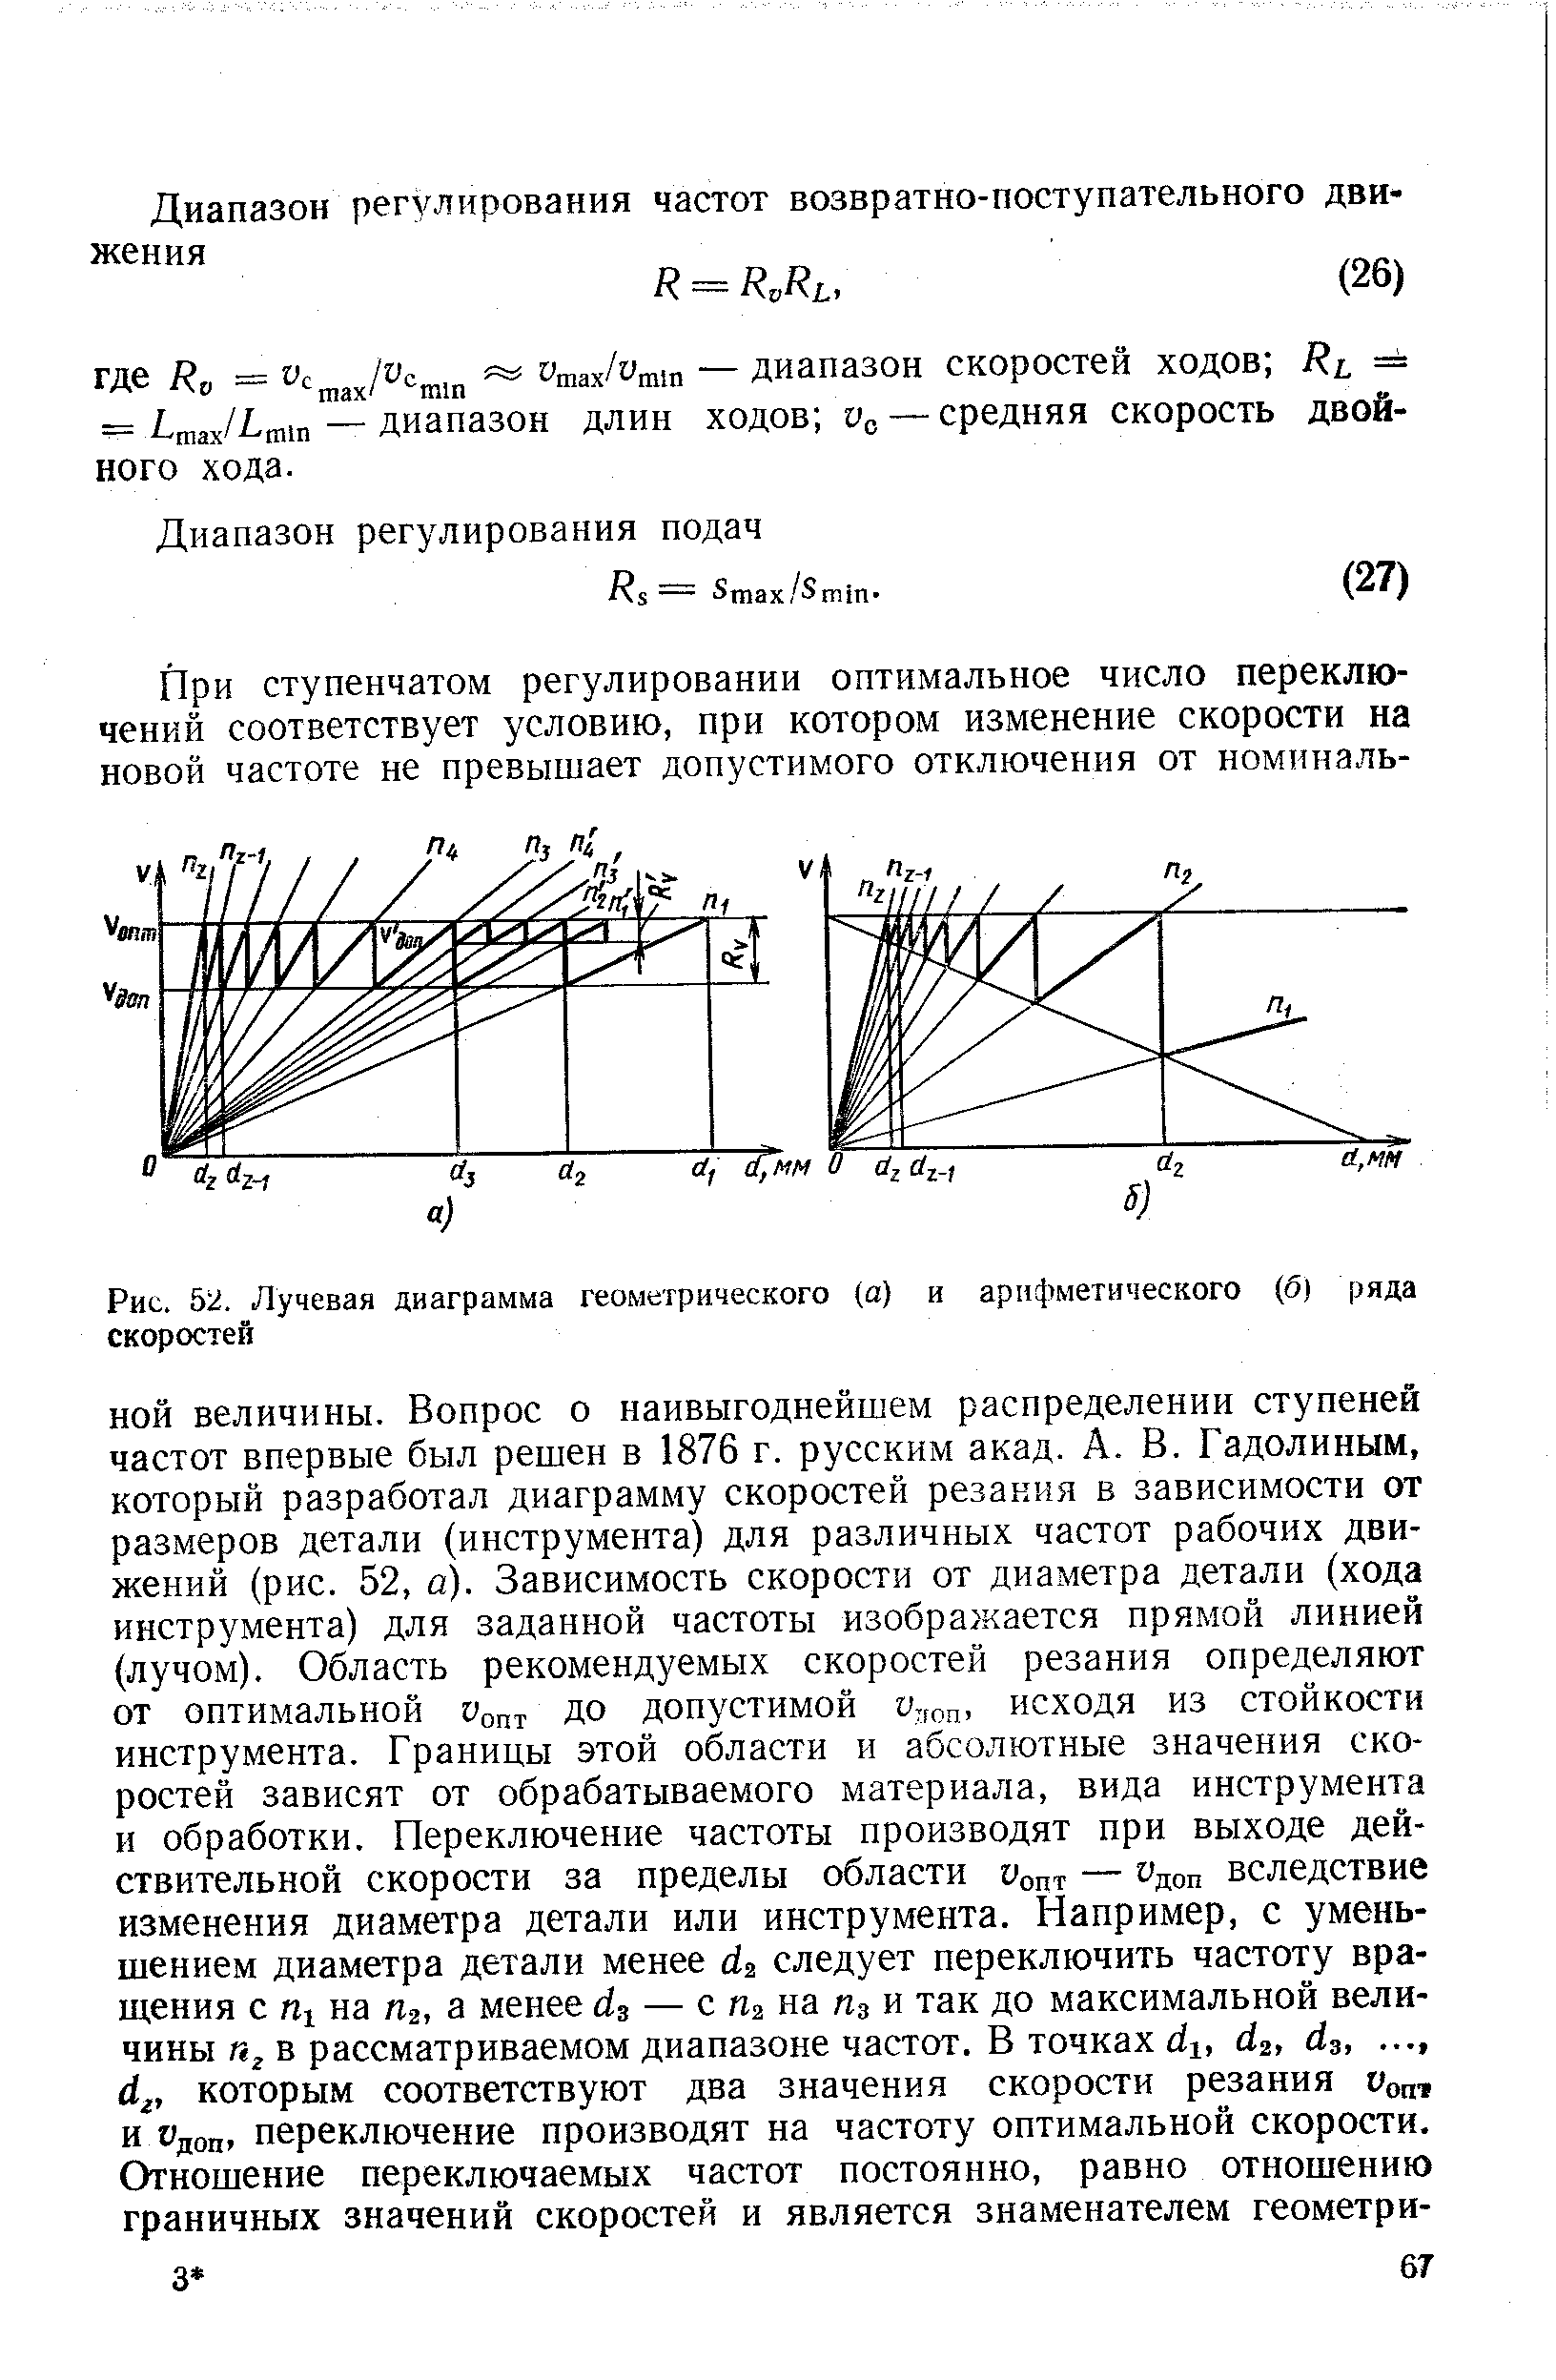 Рис. 52. Лучевая диаграмма геометрического (а) и арифметического (б) ряда скоростей
